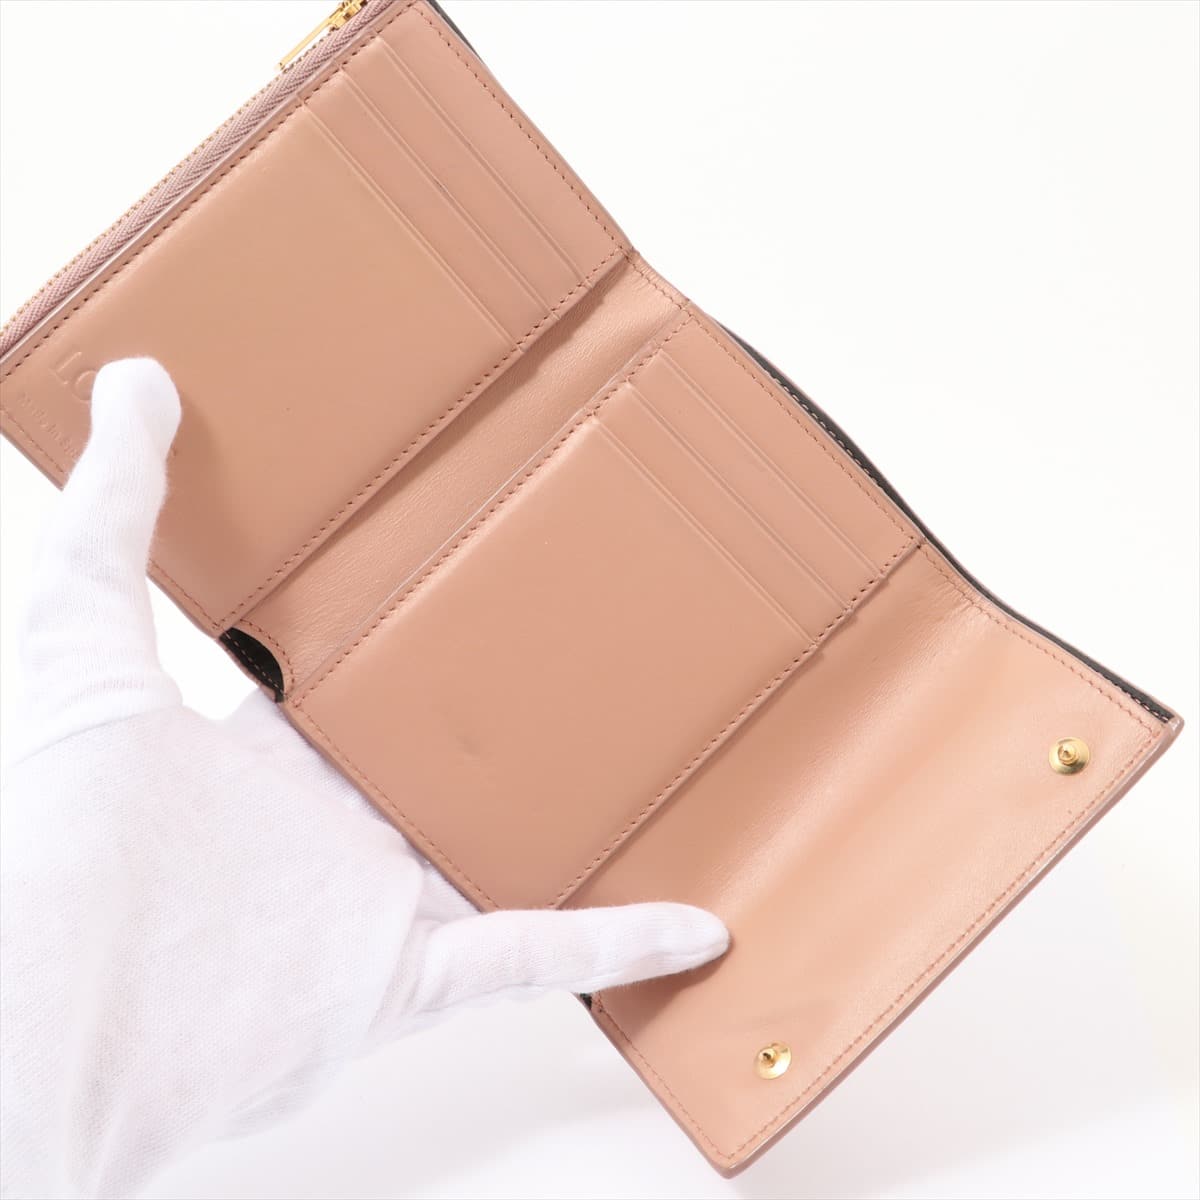 Loewe Leather Wallet Pink beige